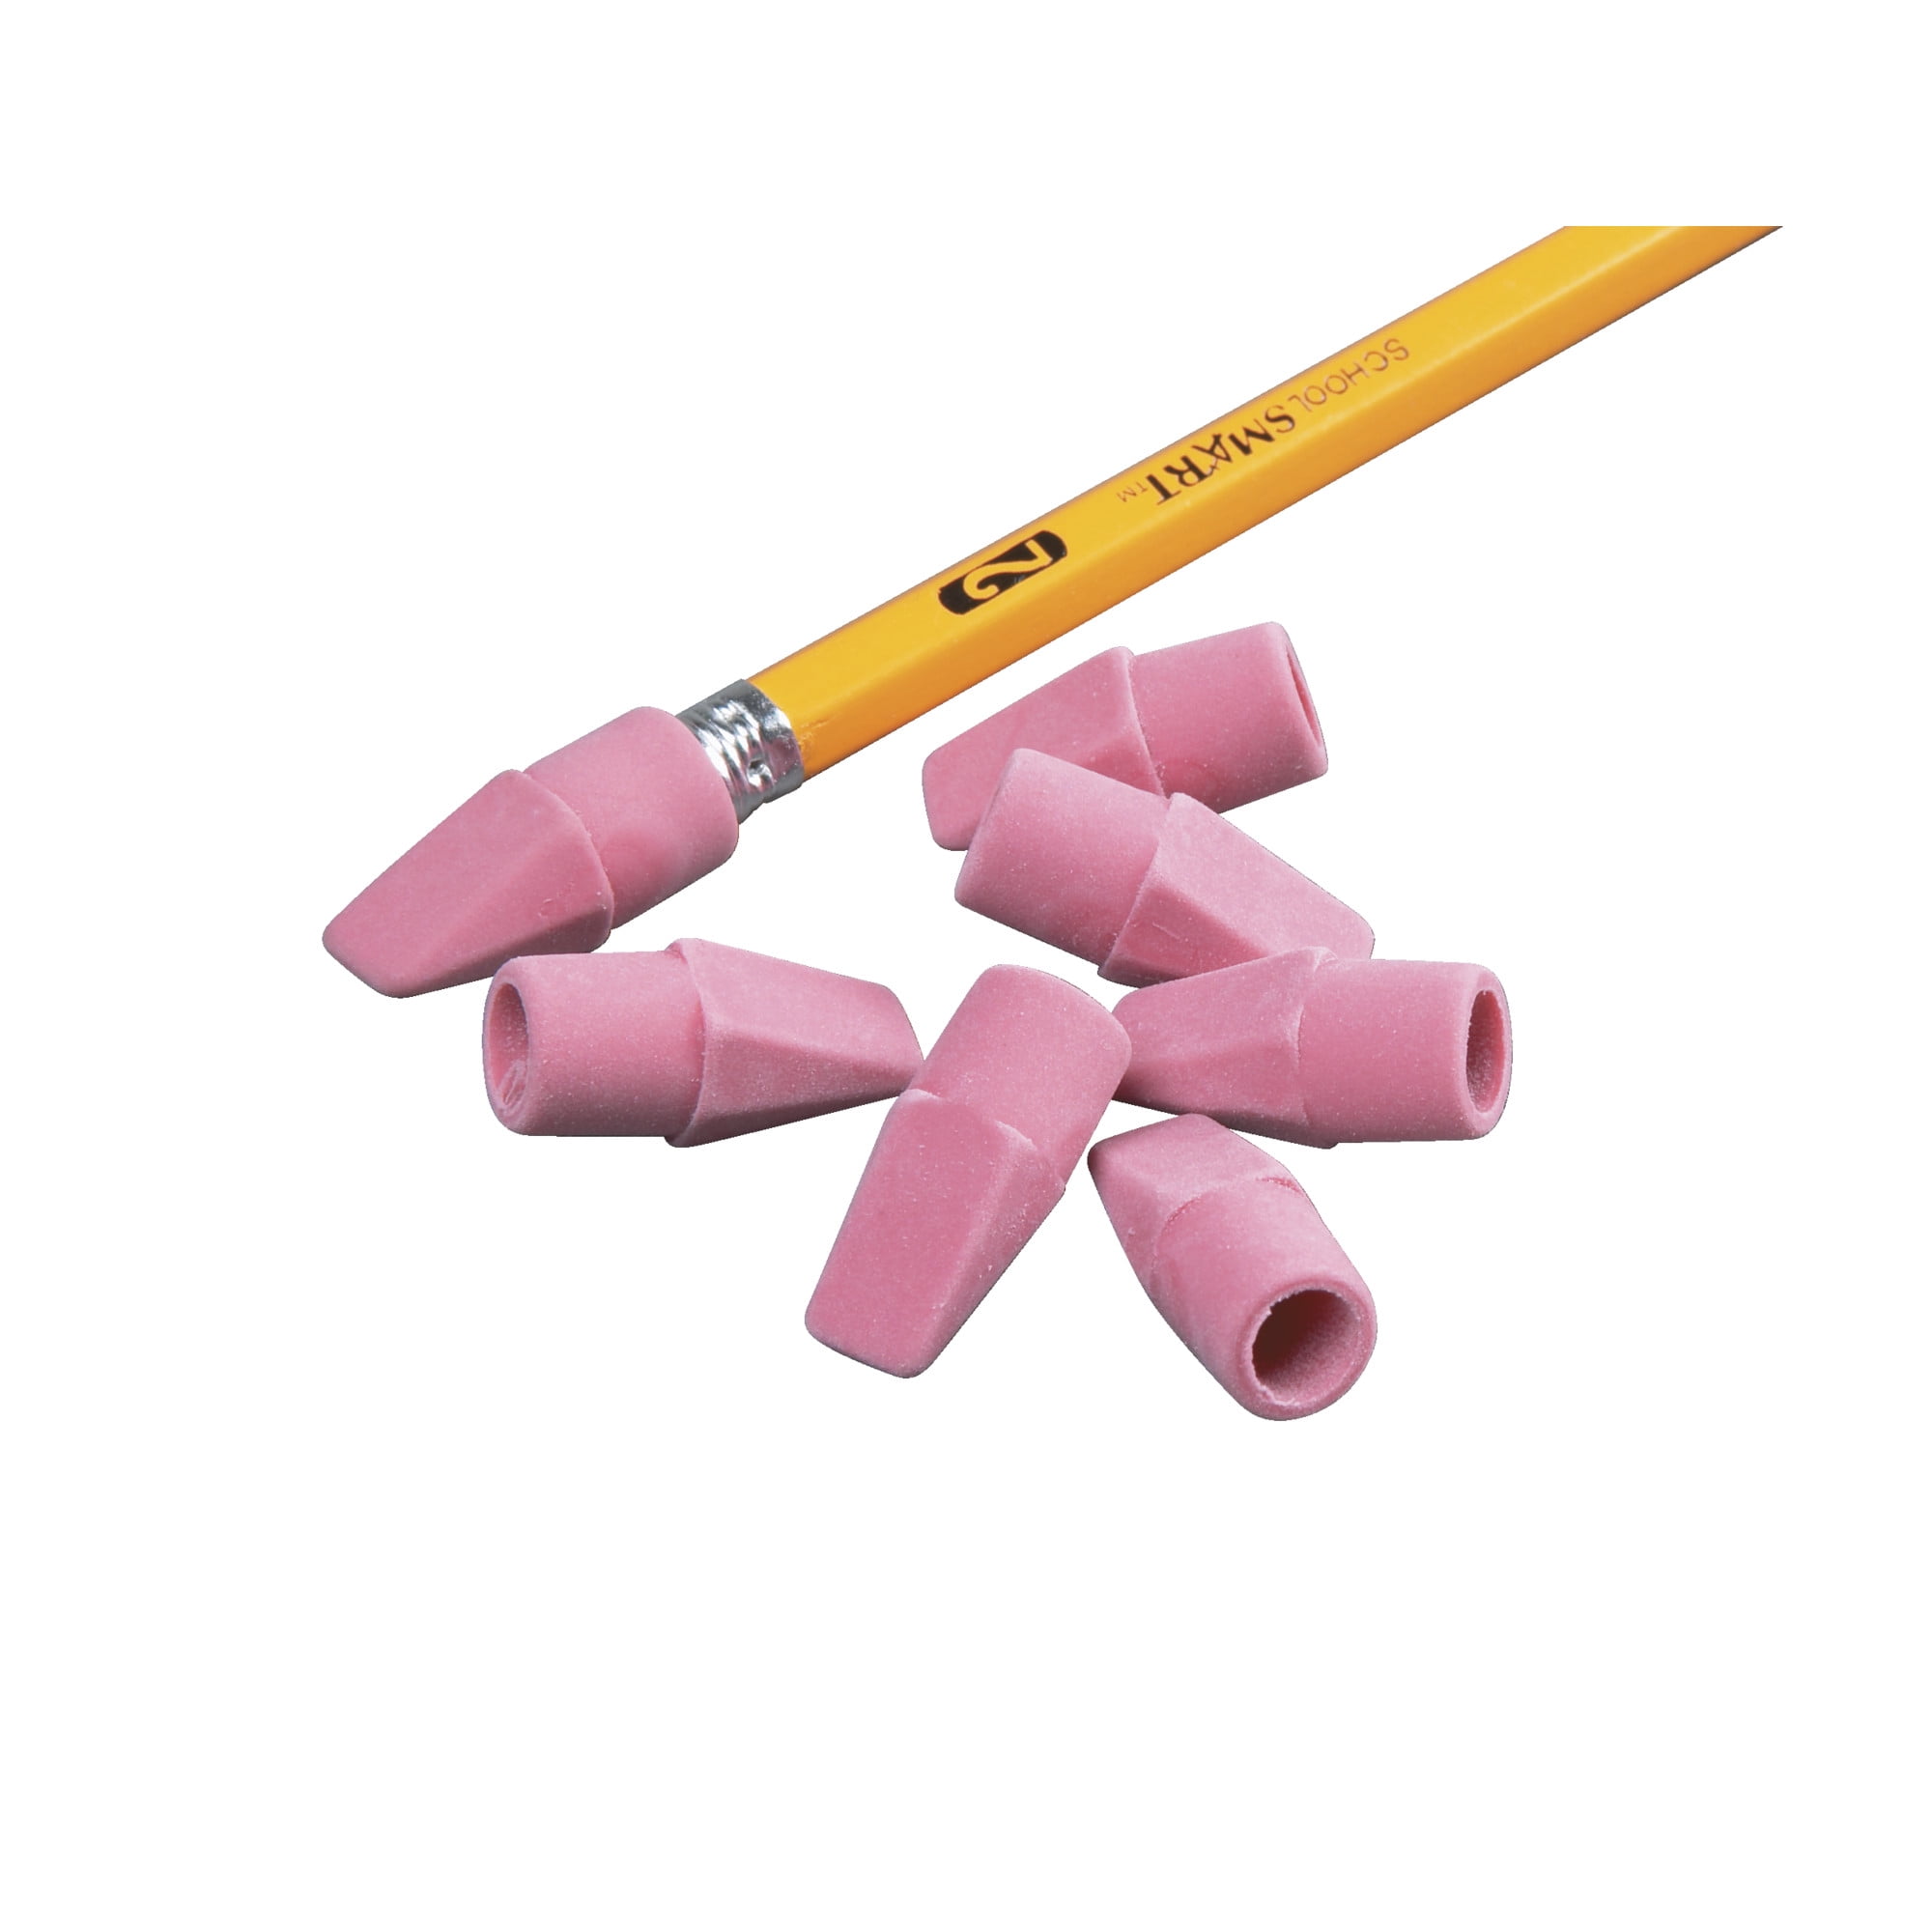 Pencils Rubber Erase Electric, School Correction Supplies